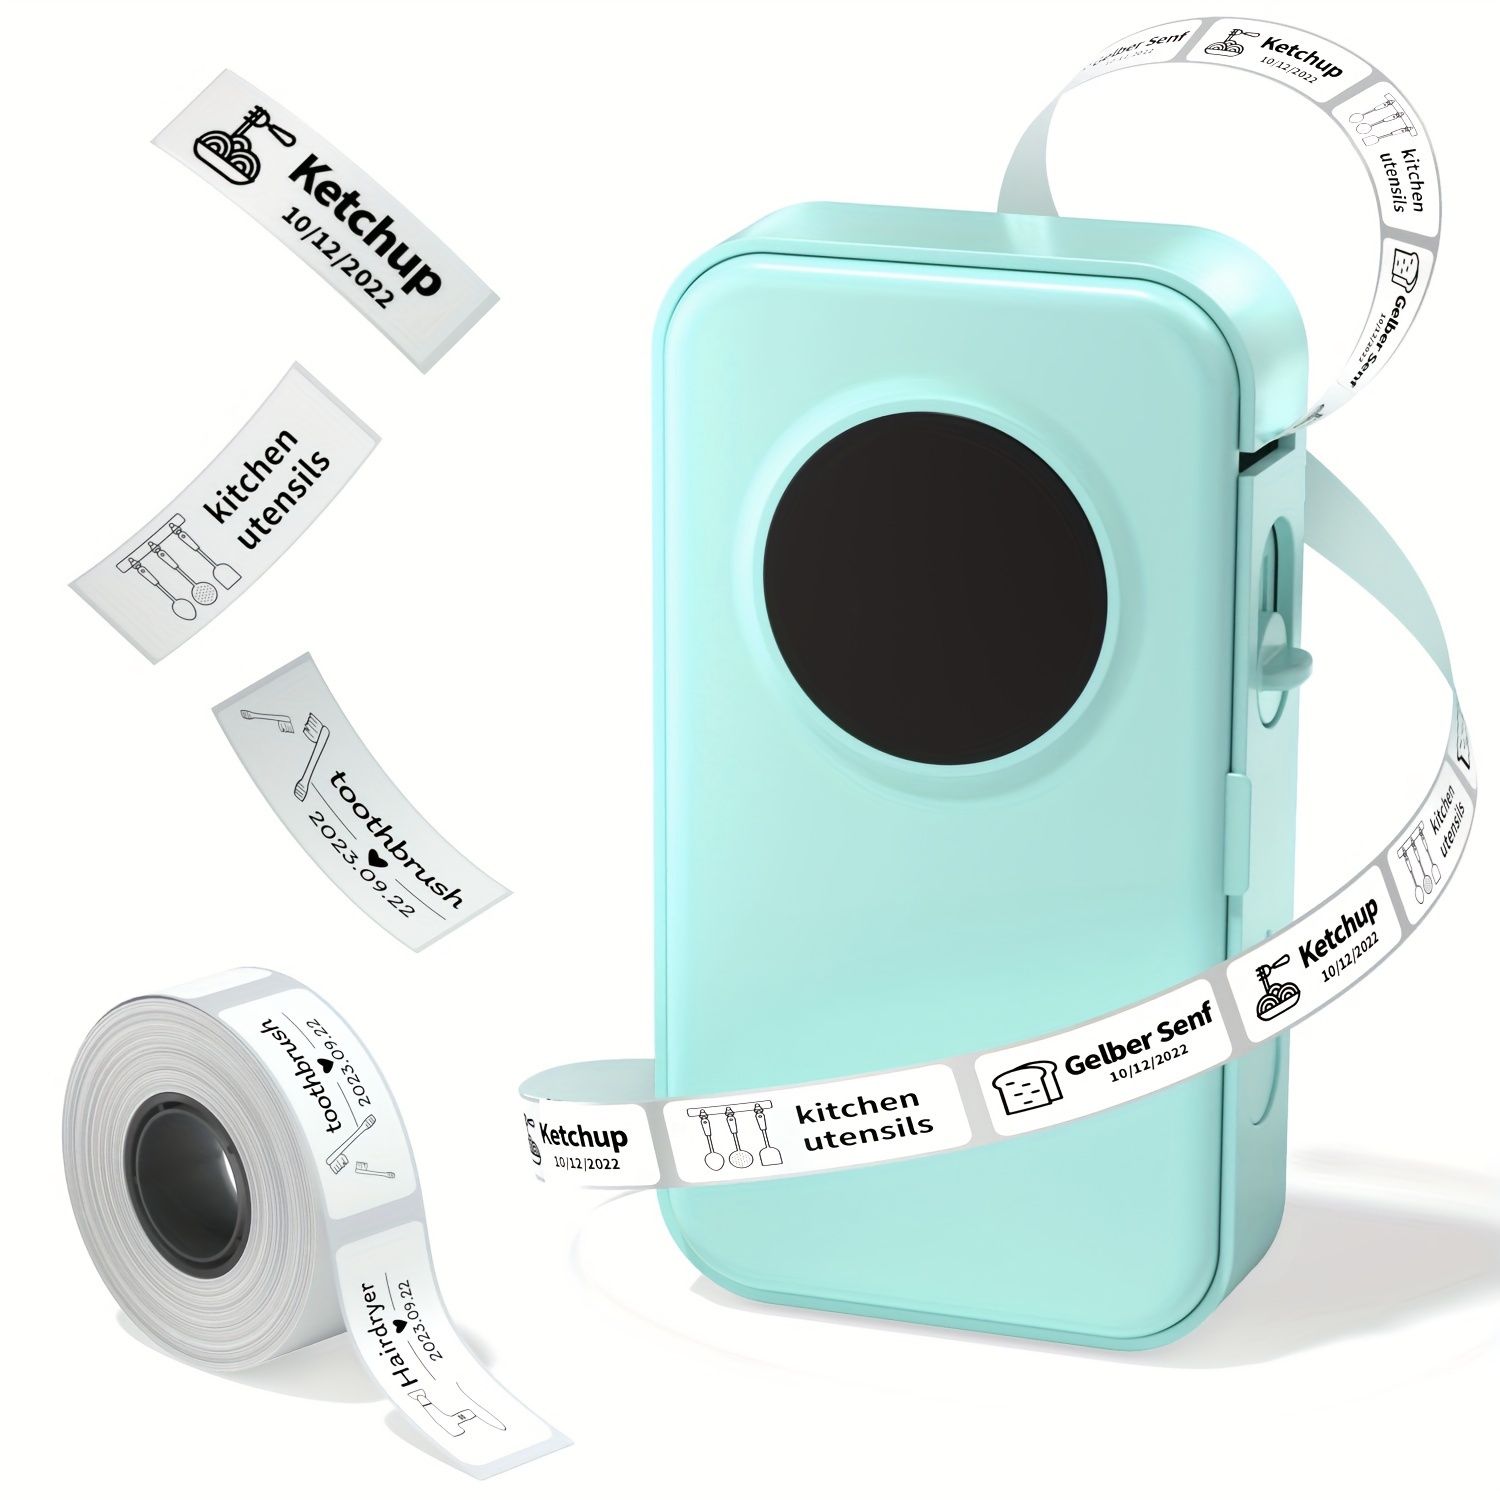 Etichettatrice con nastro adesivo stampante portatile senza fili Bluetooth  con mini adesivi carini compatibile con iOS